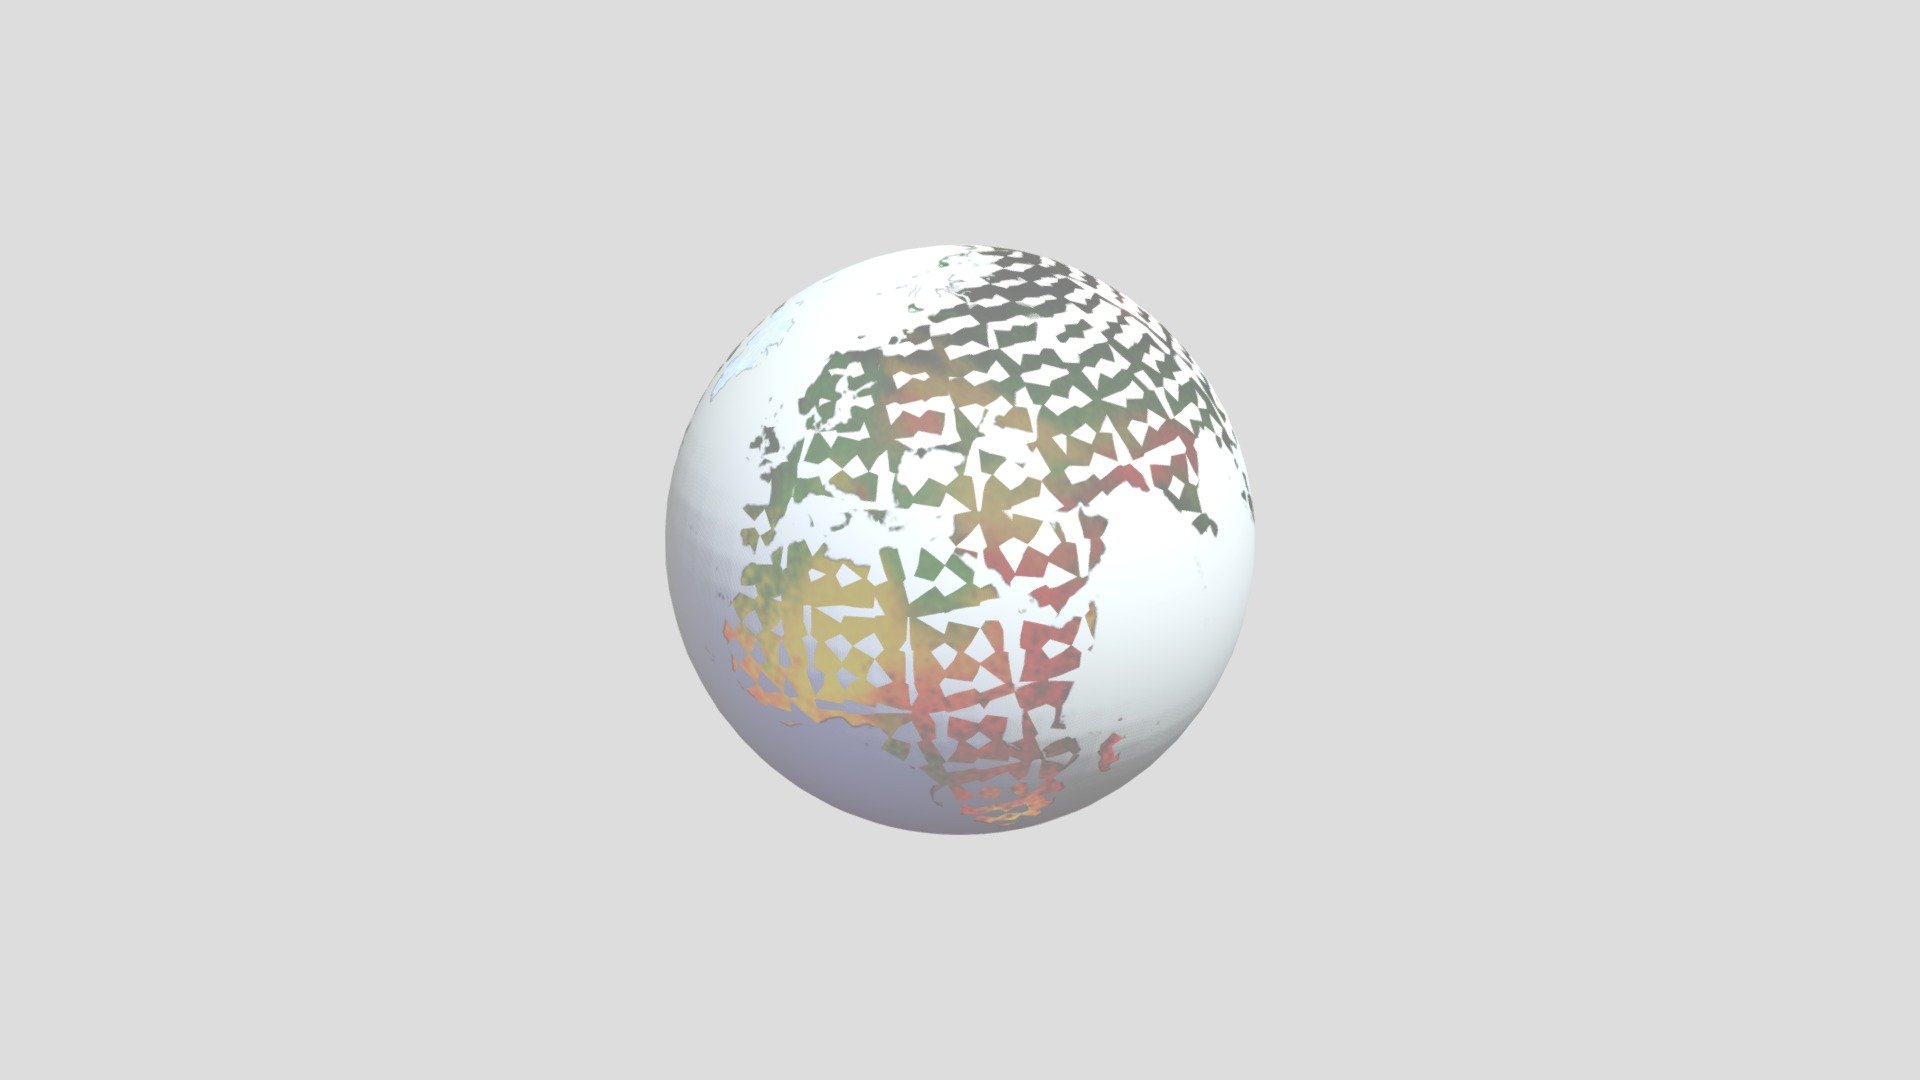 knvb logo 3D Models to Print - yeggi